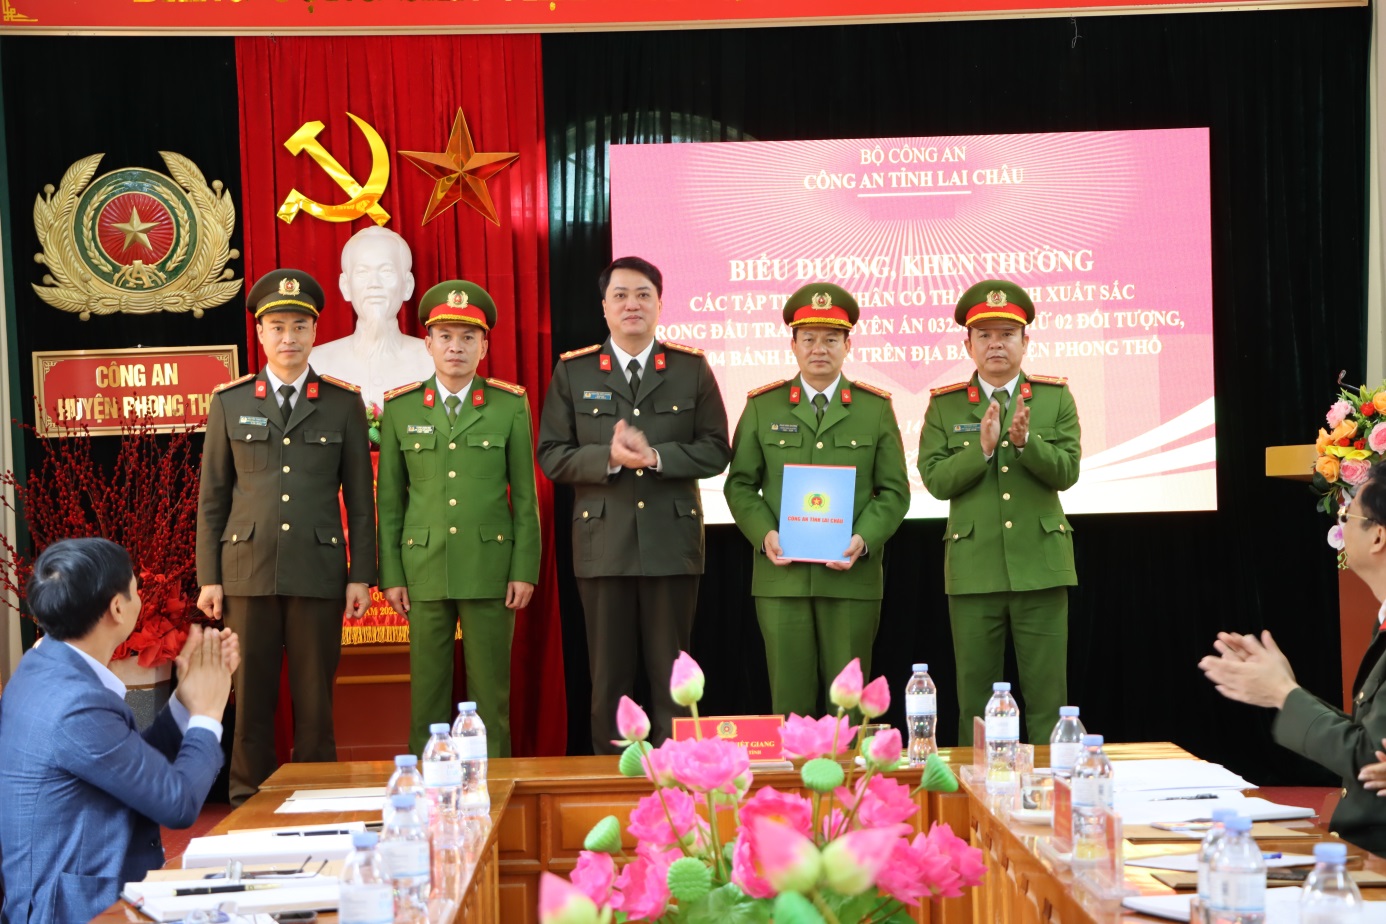 Đại tá Nguyễn Viết Giang, Giám đốc Công an tỉnh Lai Châu biểu dương khen thưởng Ban Chuyên án